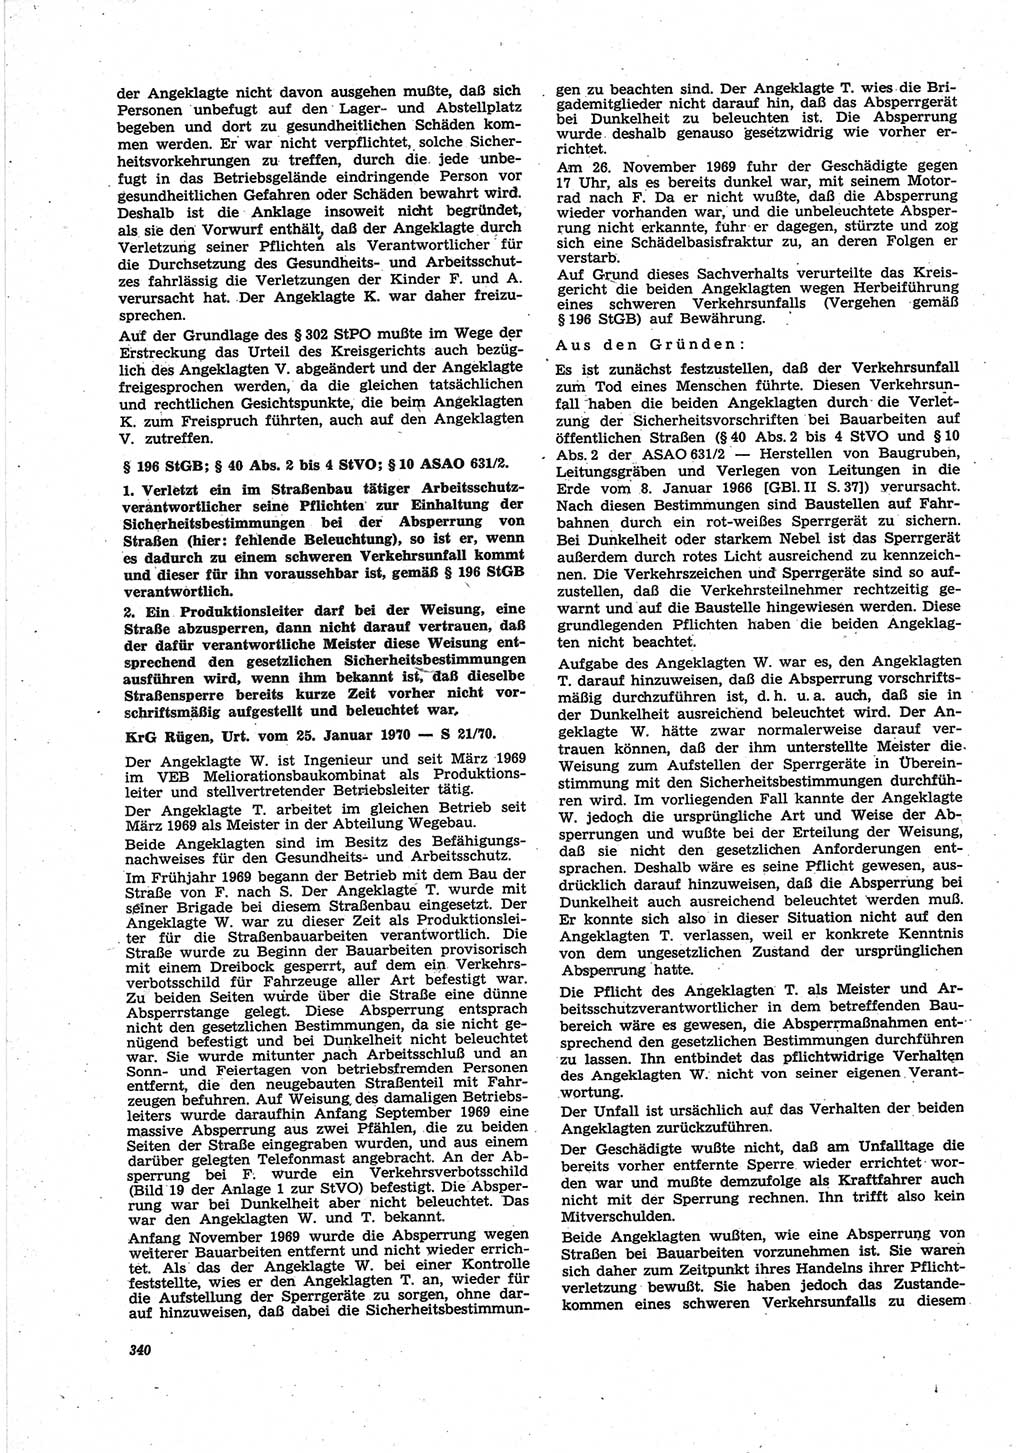 Neue Justiz (NJ), Zeitschrift für Recht und Rechtswissenschaft [Deutsche Demokratische Republik (DDR)], 25. Jahrgang 1971, Seite 340 (NJ DDR 1971, S. 340)